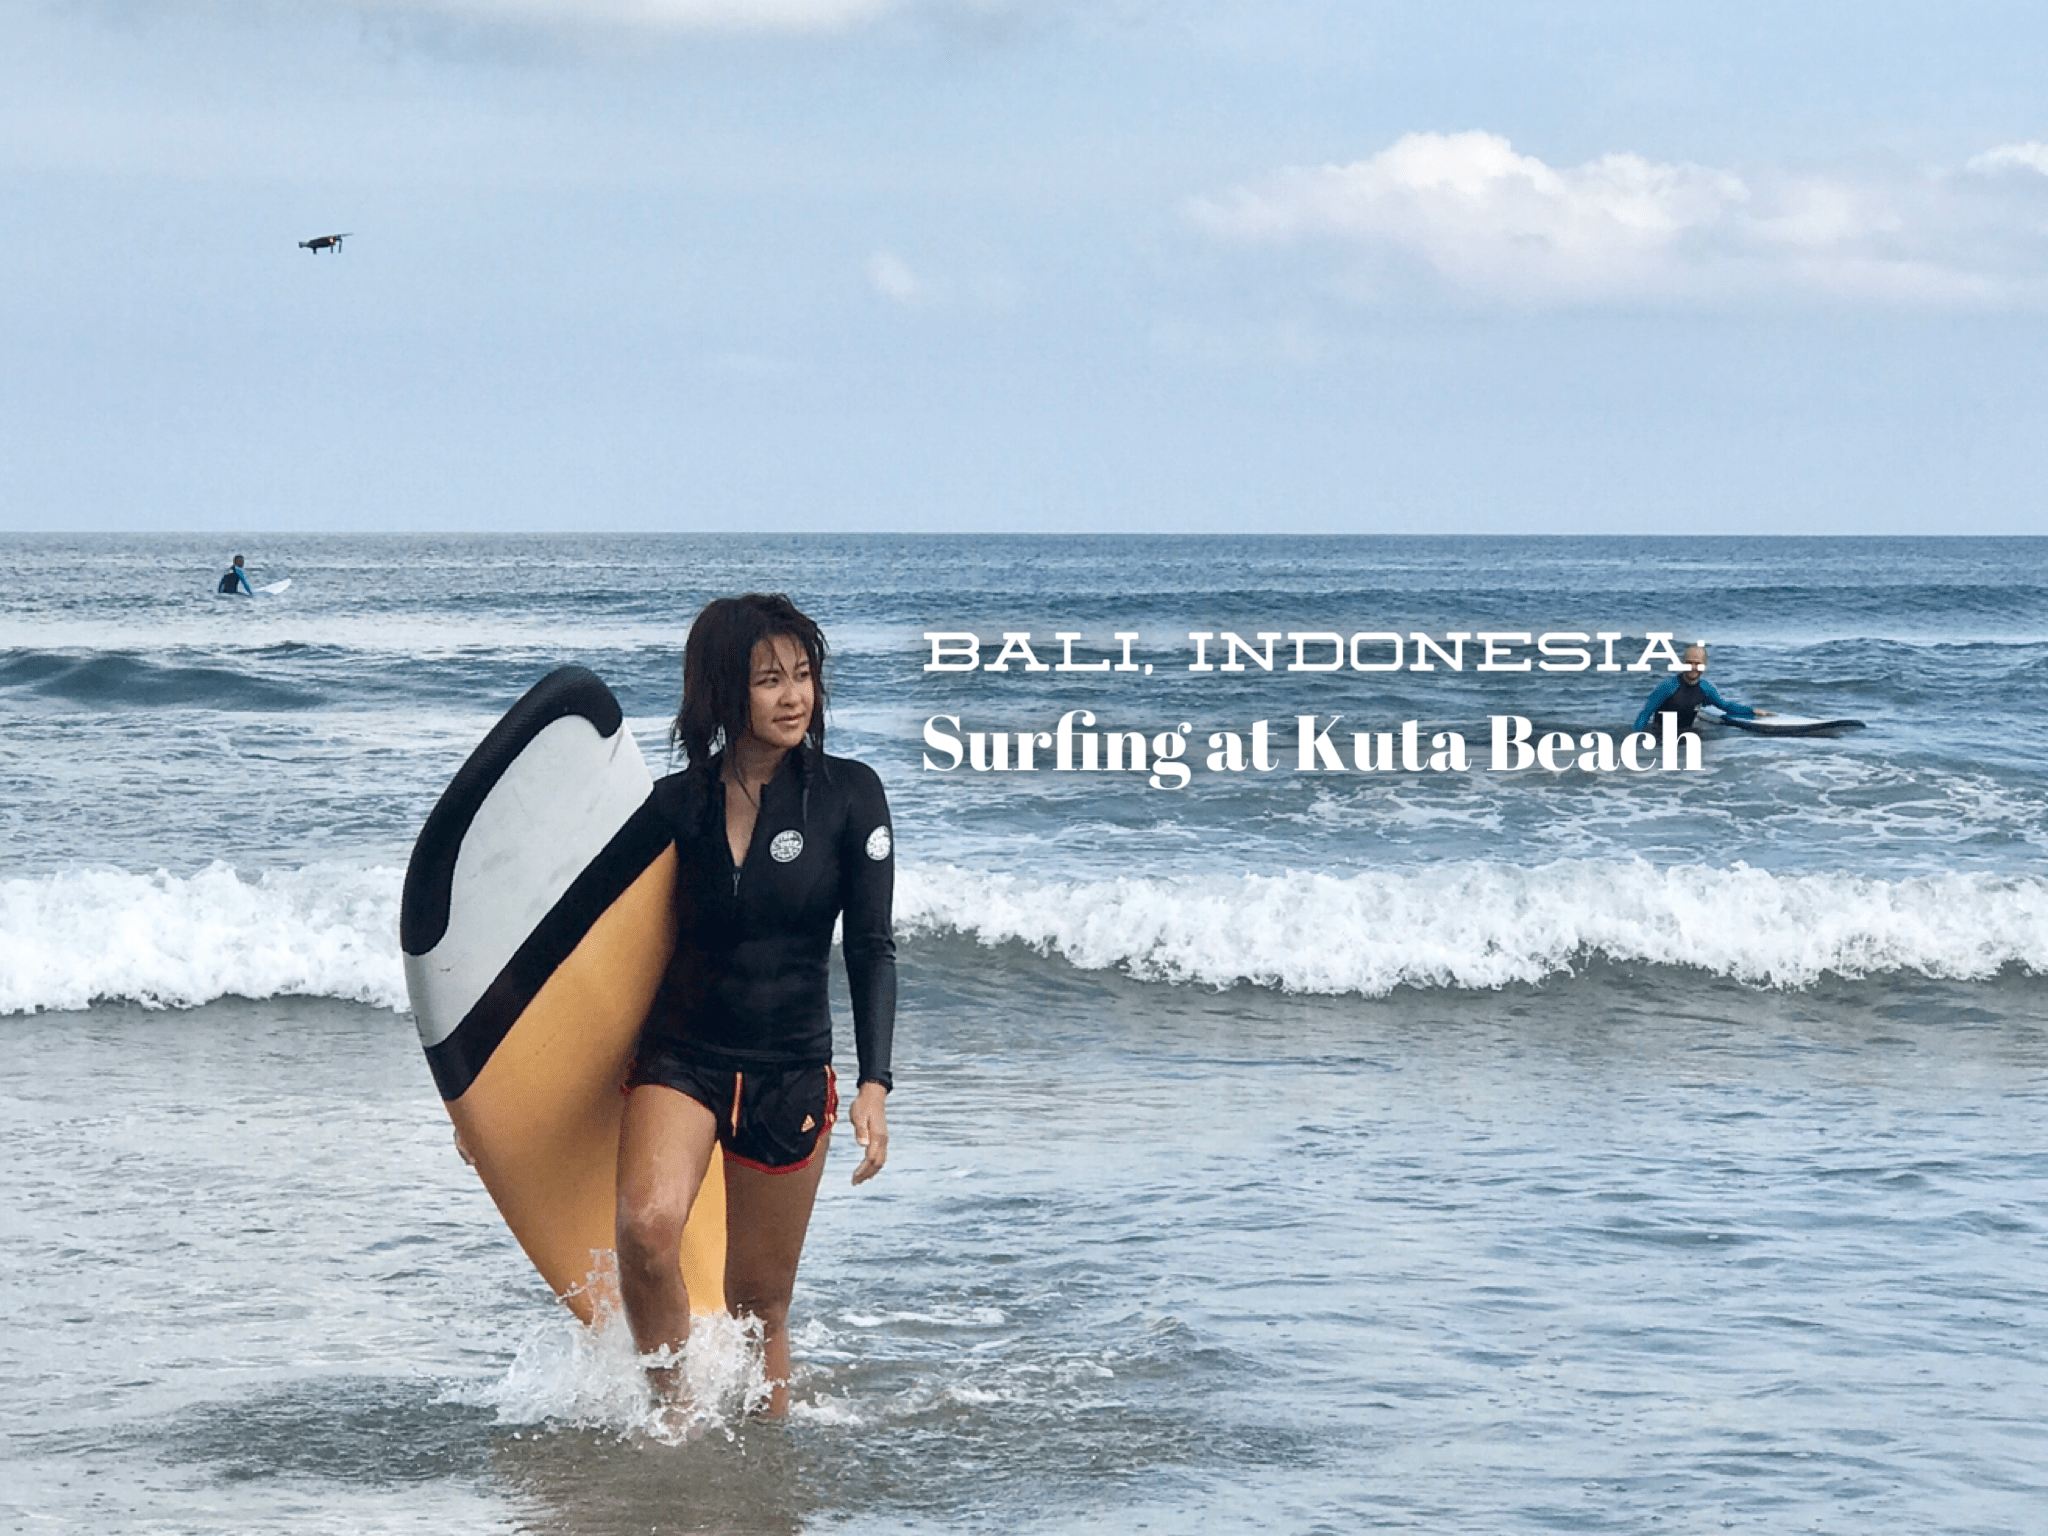 kuta beach surfing